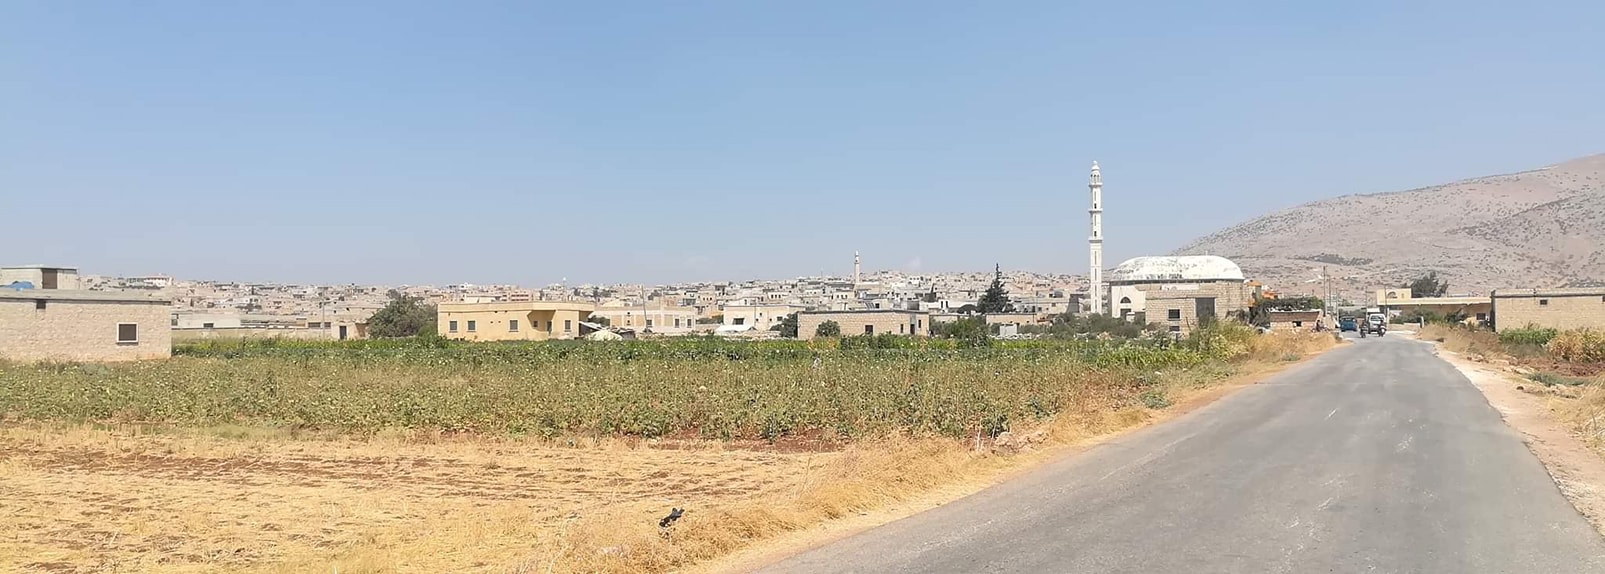 لحوم الأضاحي تتسبب بمقـ تل وإصابة 7 عناصر من ميليشيا فيلق الشام في بلدة تلعادة بريف إدلب الشمالي